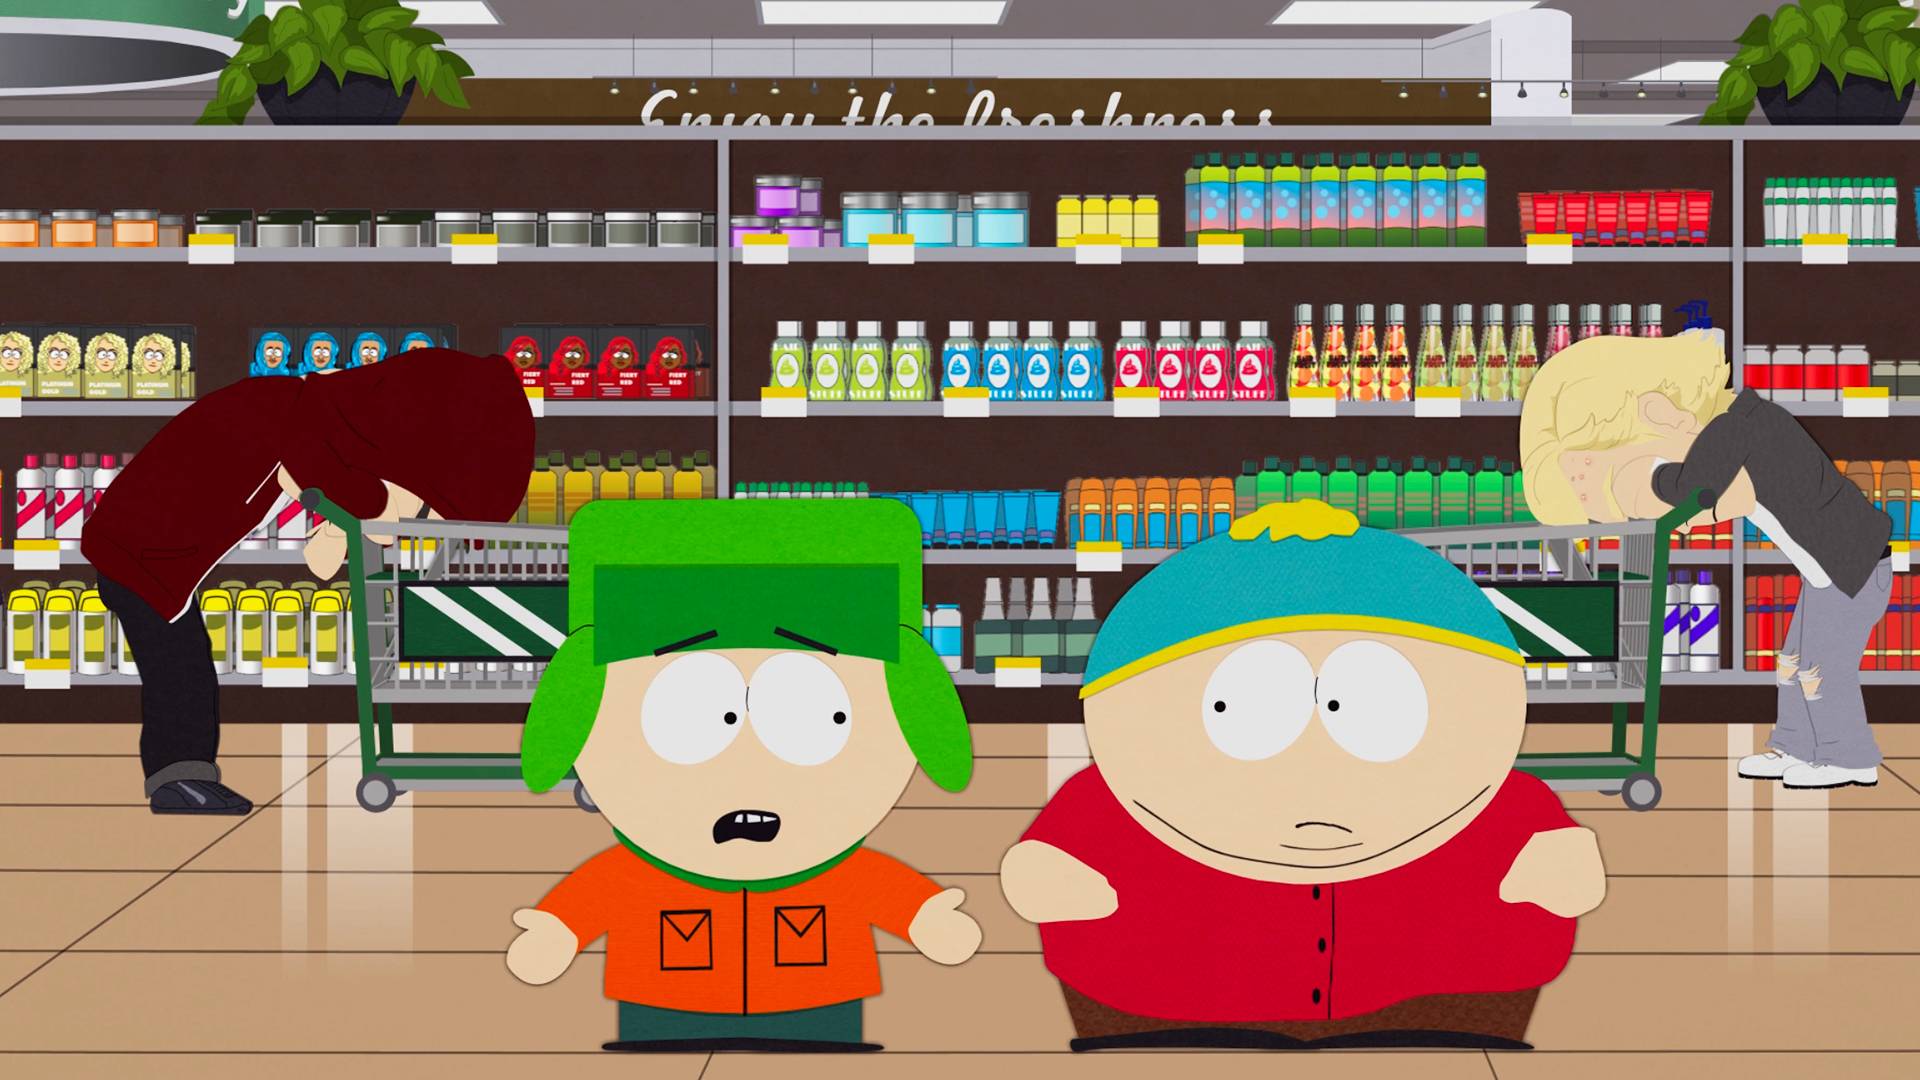 South Park Shops